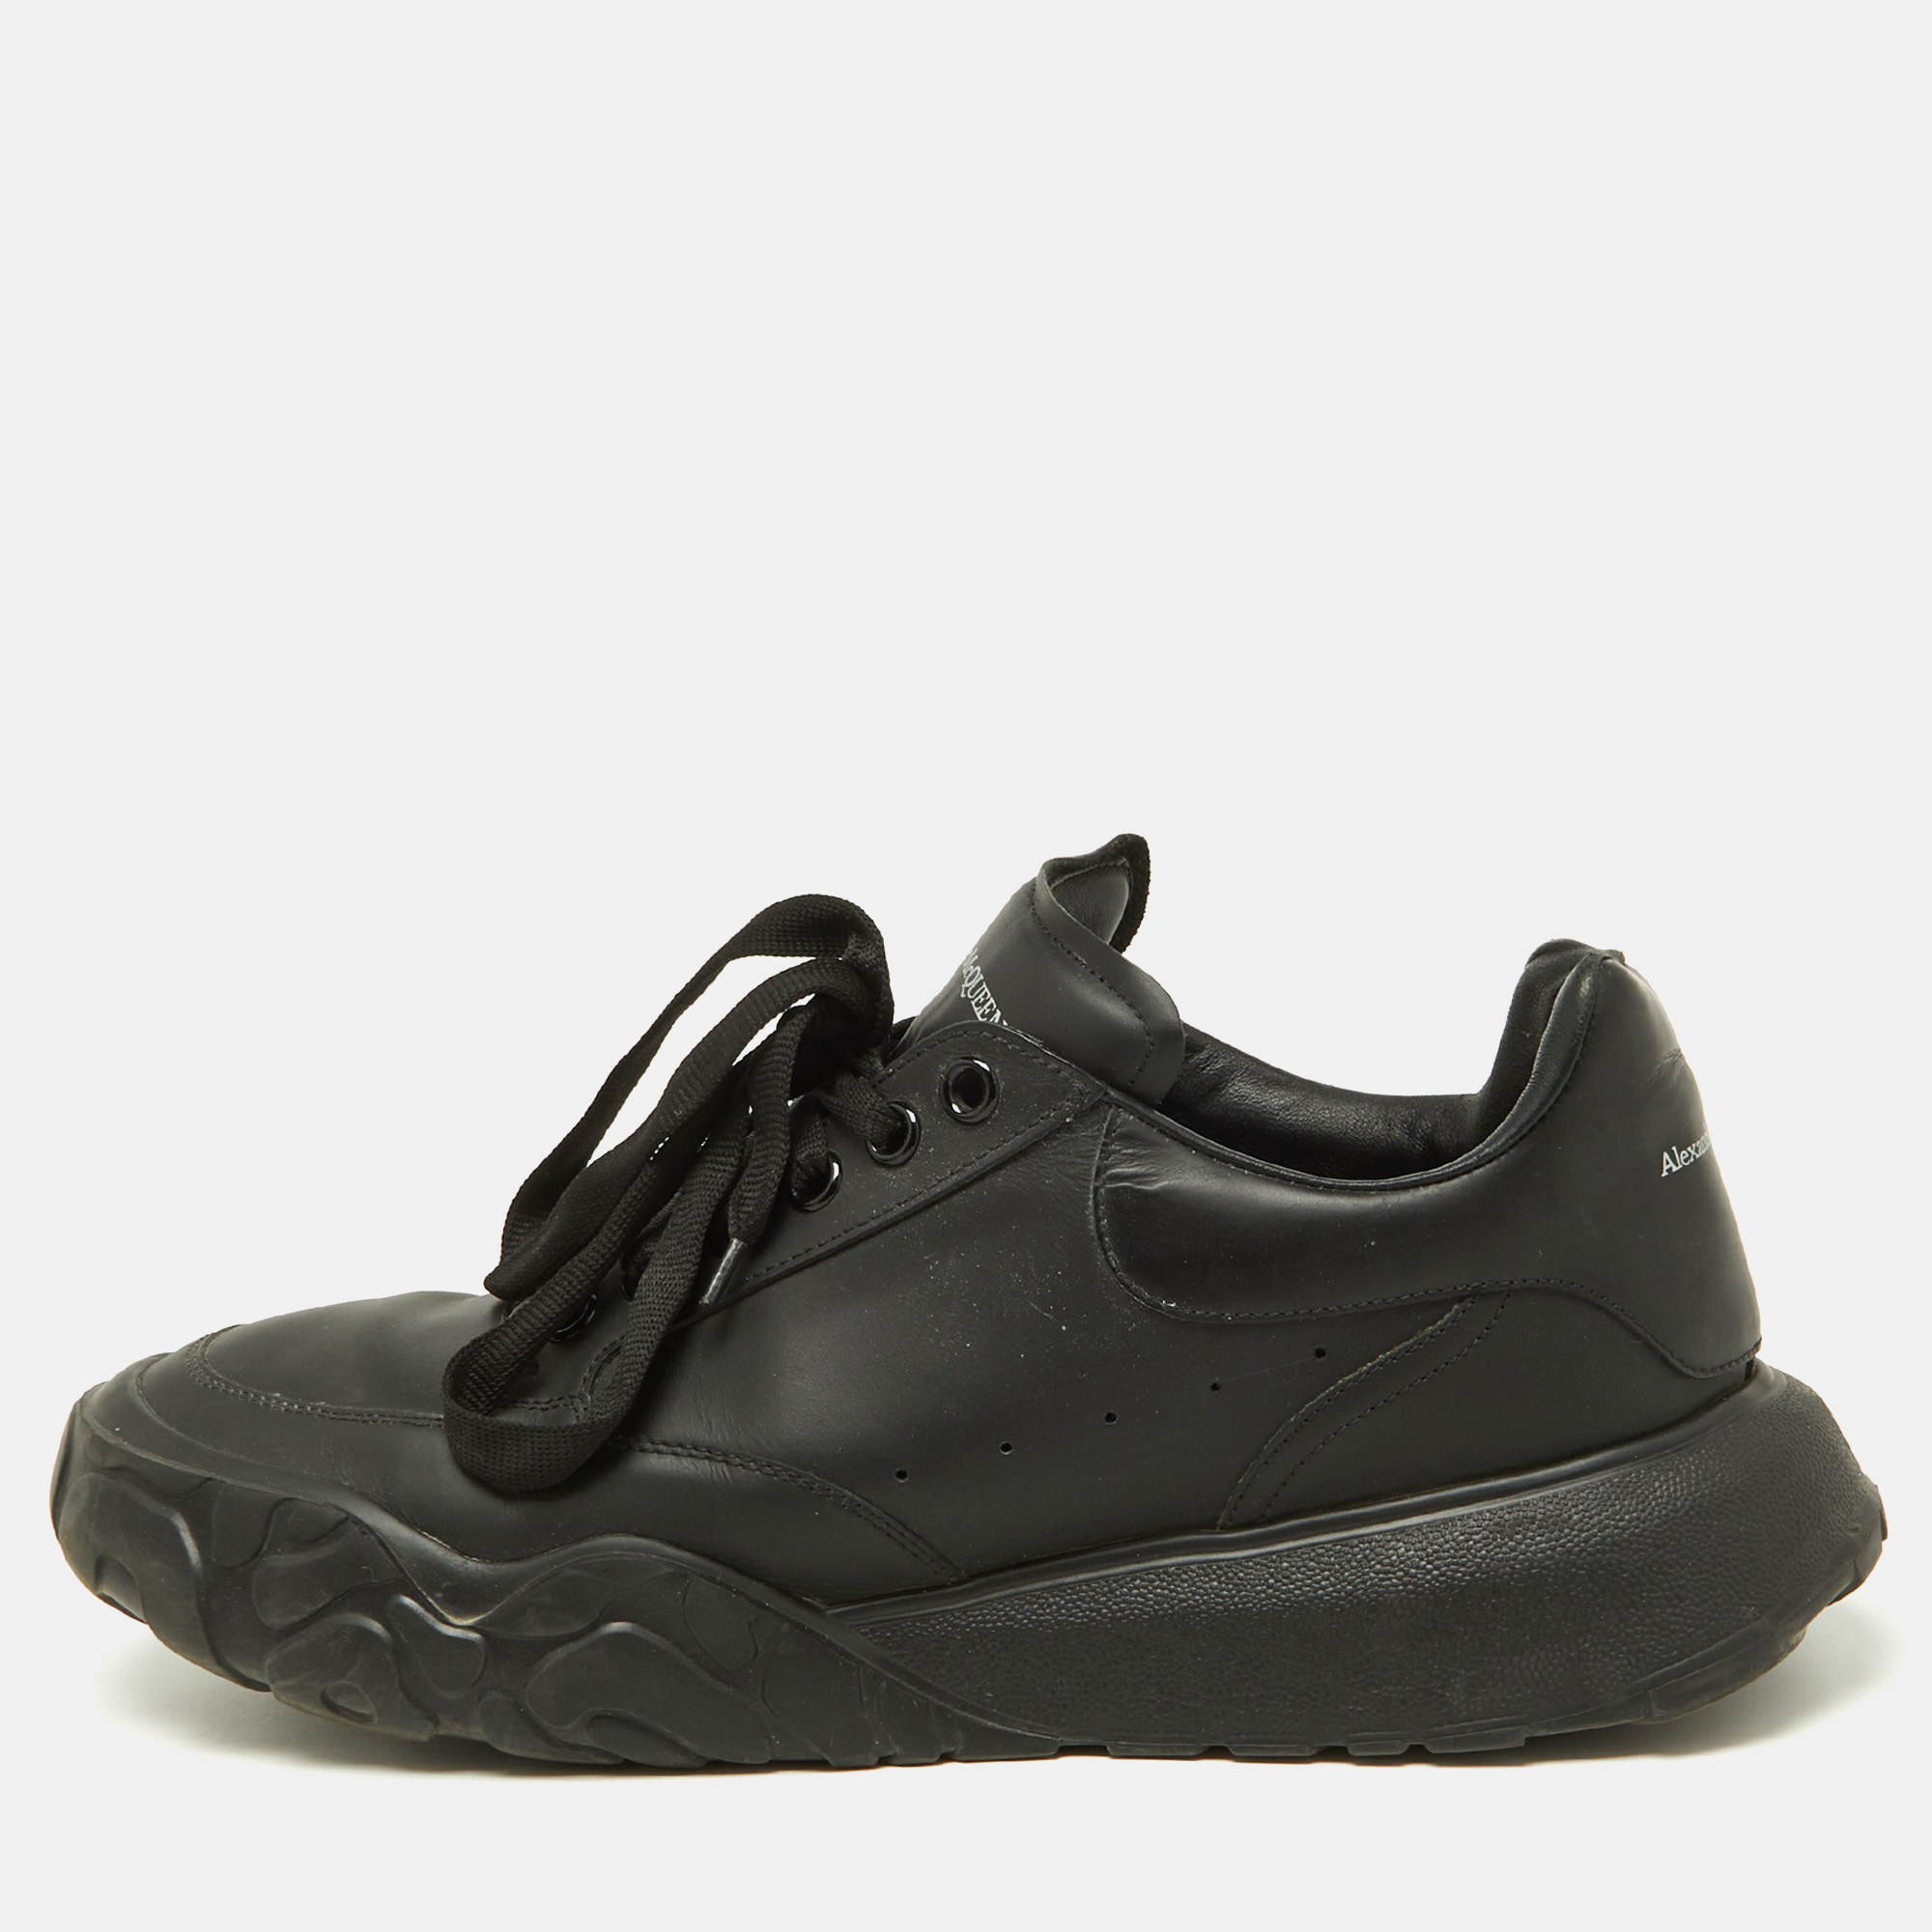 Alexander mcqueen black leather oversized runner low top sneakers size 44